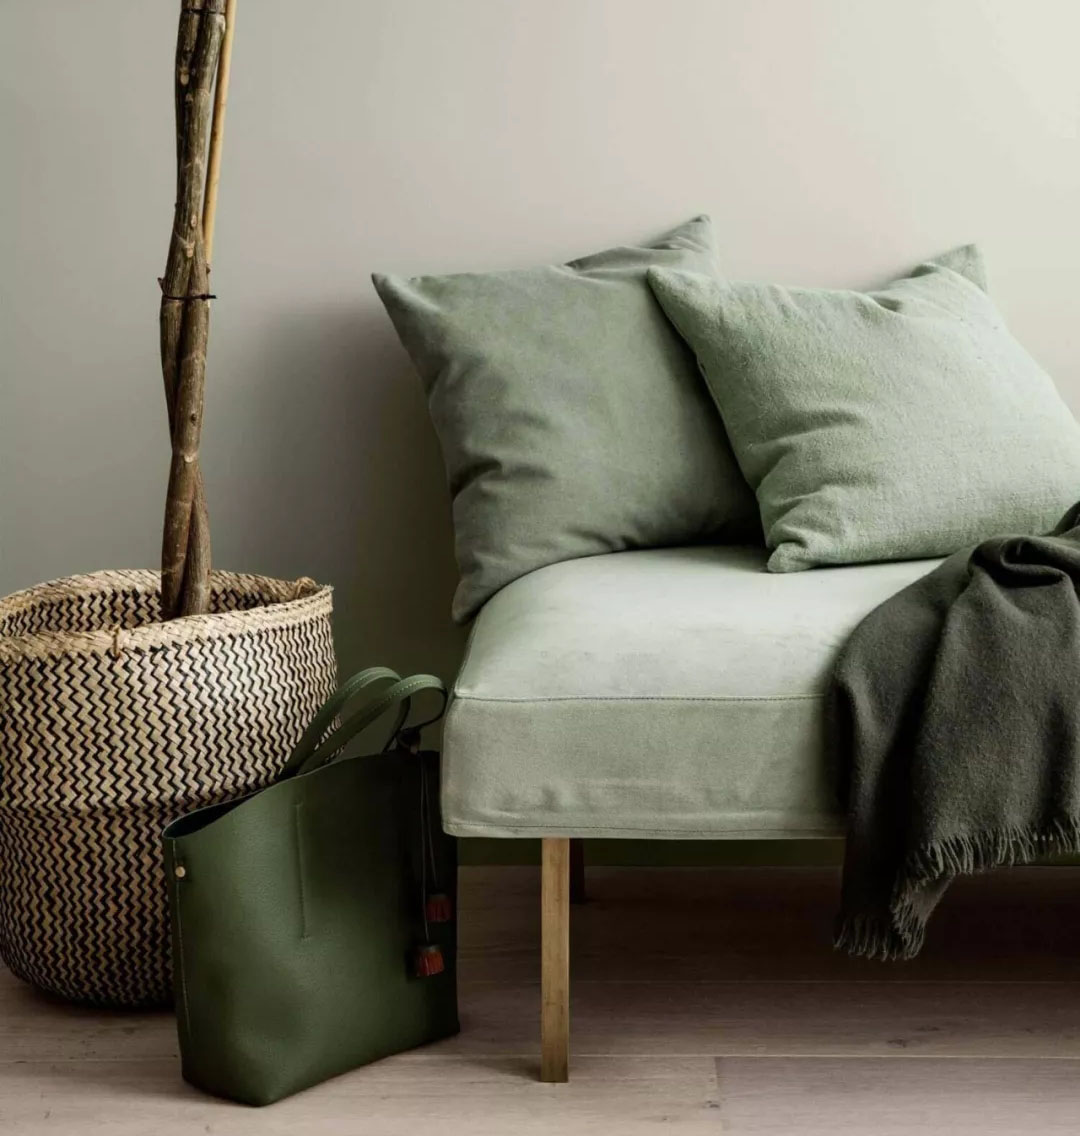 抱枕和坐凳的草绿,以及托特包的深绿,毯子的橄榄绿,(甚至带点灰绿的